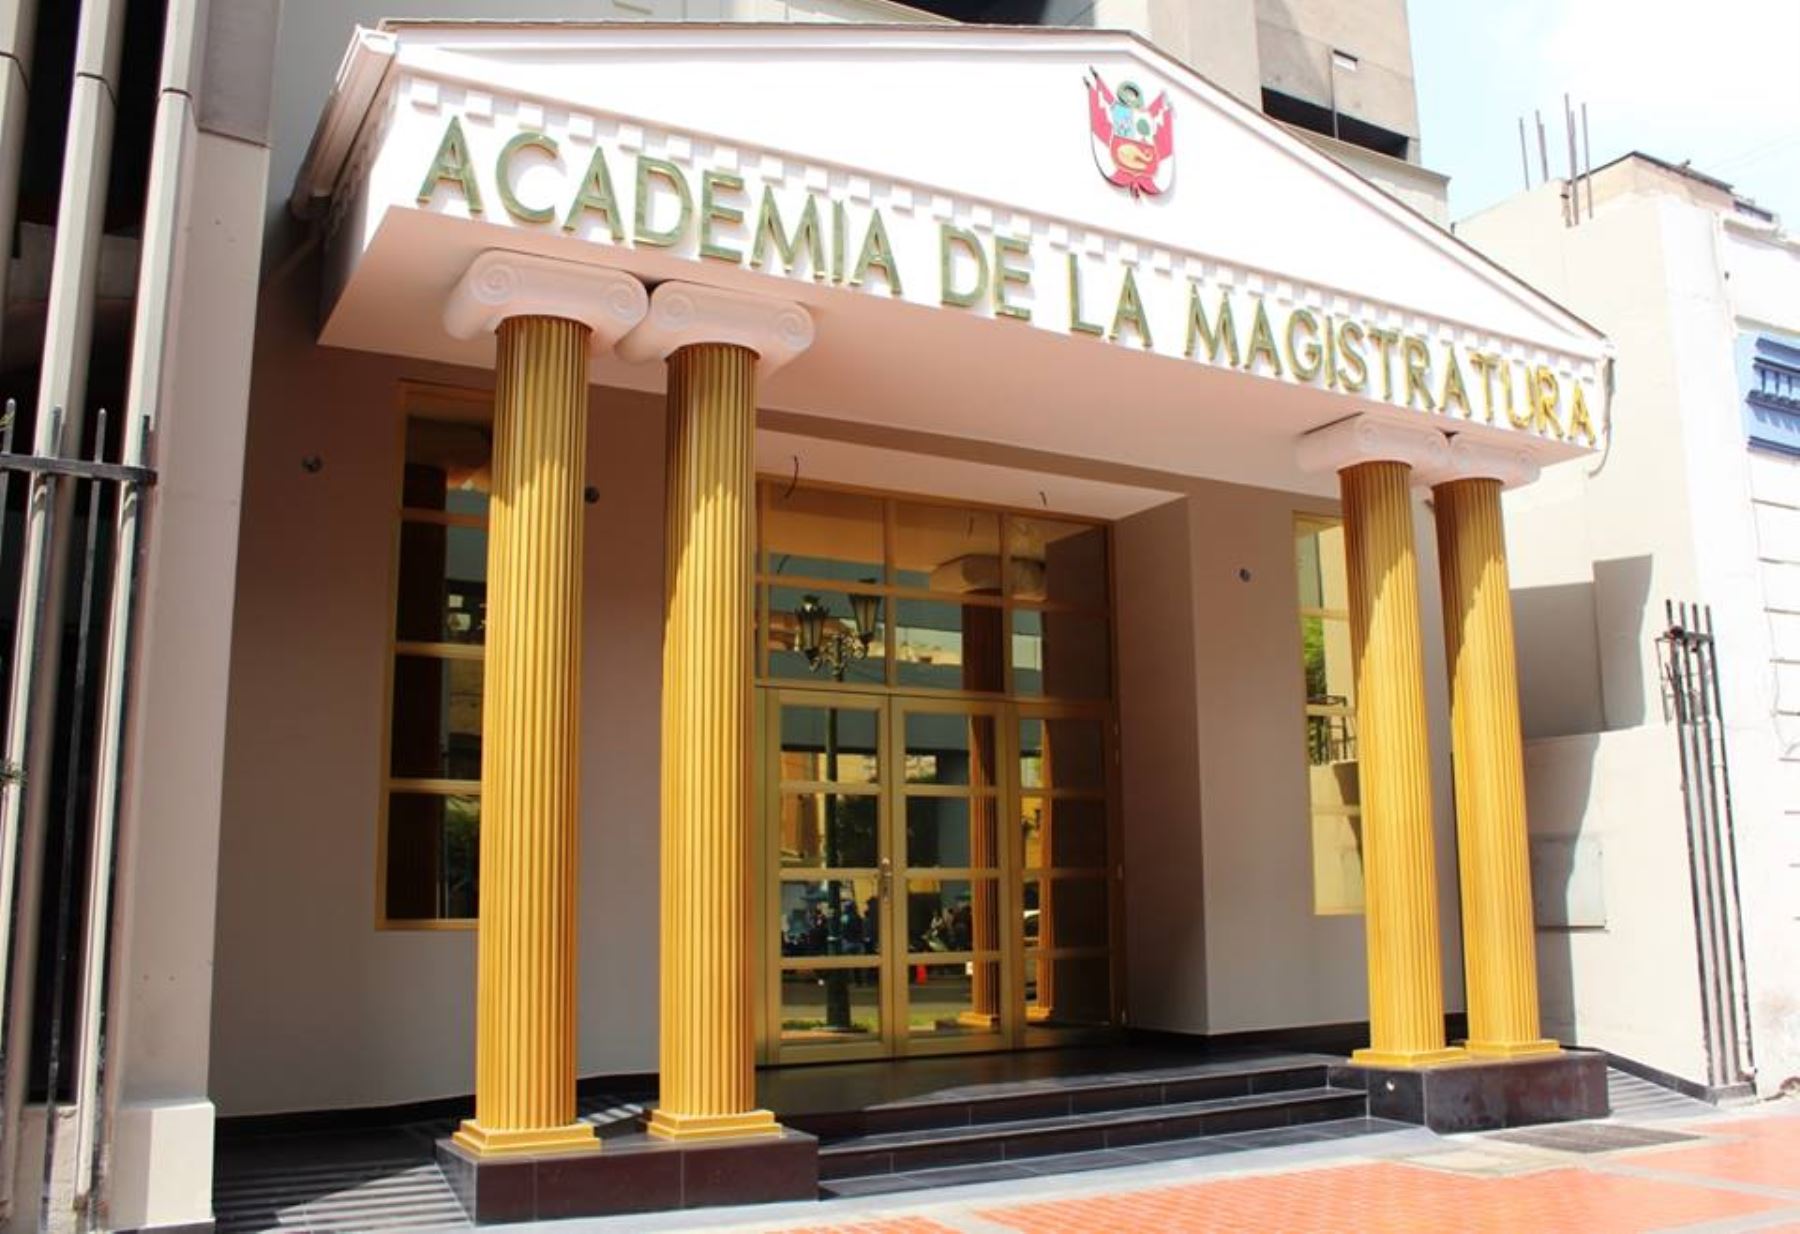 Academia de la Magistratura.